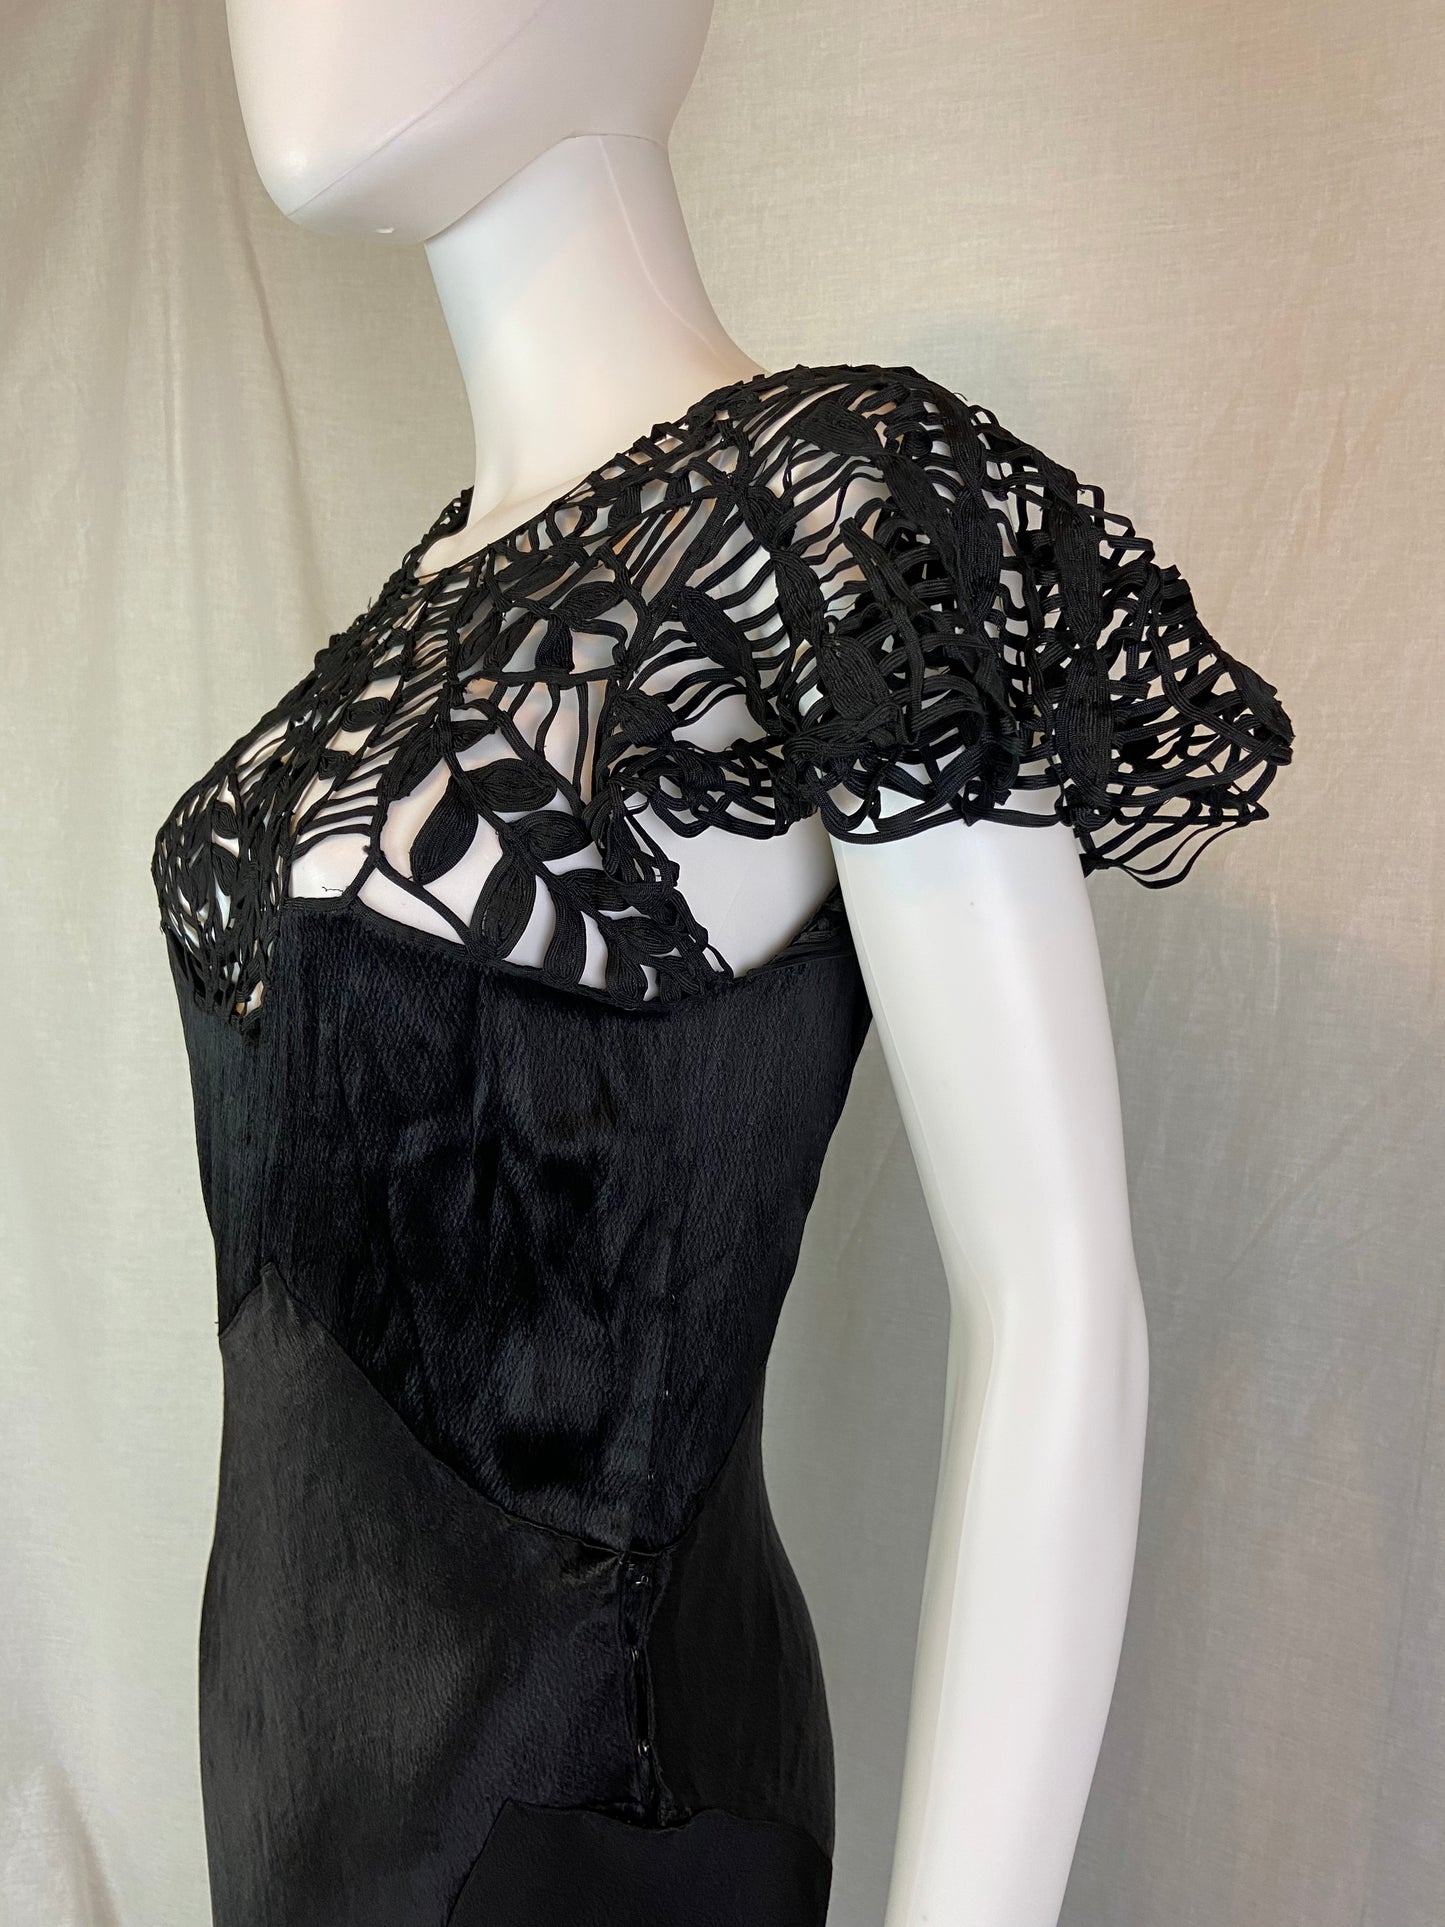 Antique Black Woven Lace Silk Bias Gown